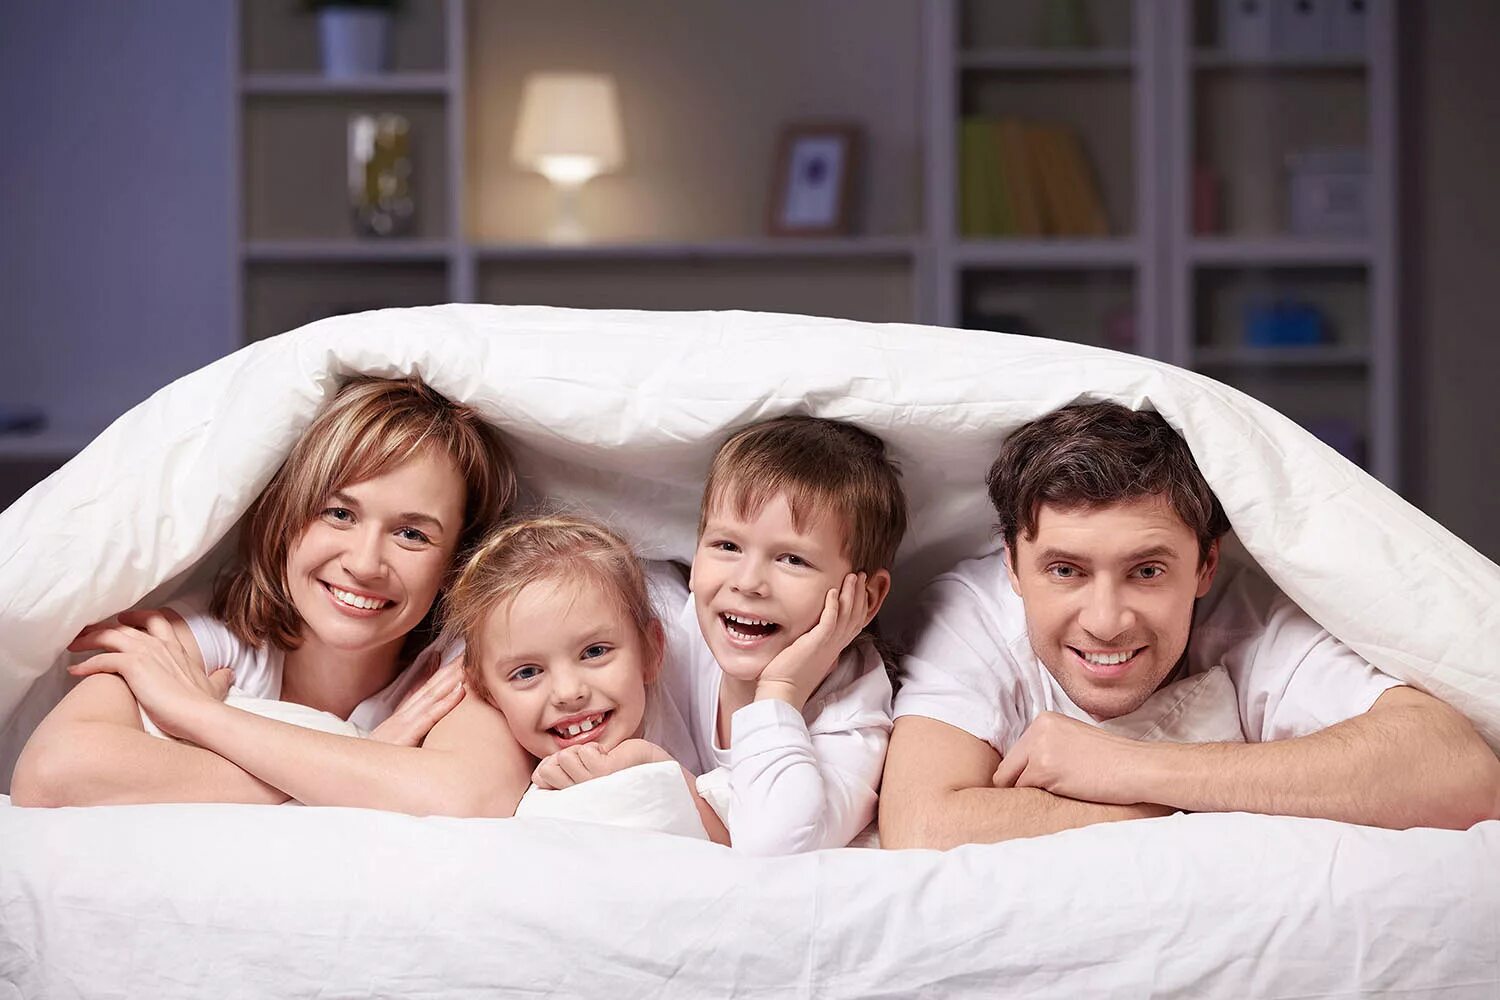 Семейная фотосессия. Семьи с детьми в гостинице. Ребенок в семье. Счастливая семья в постели.